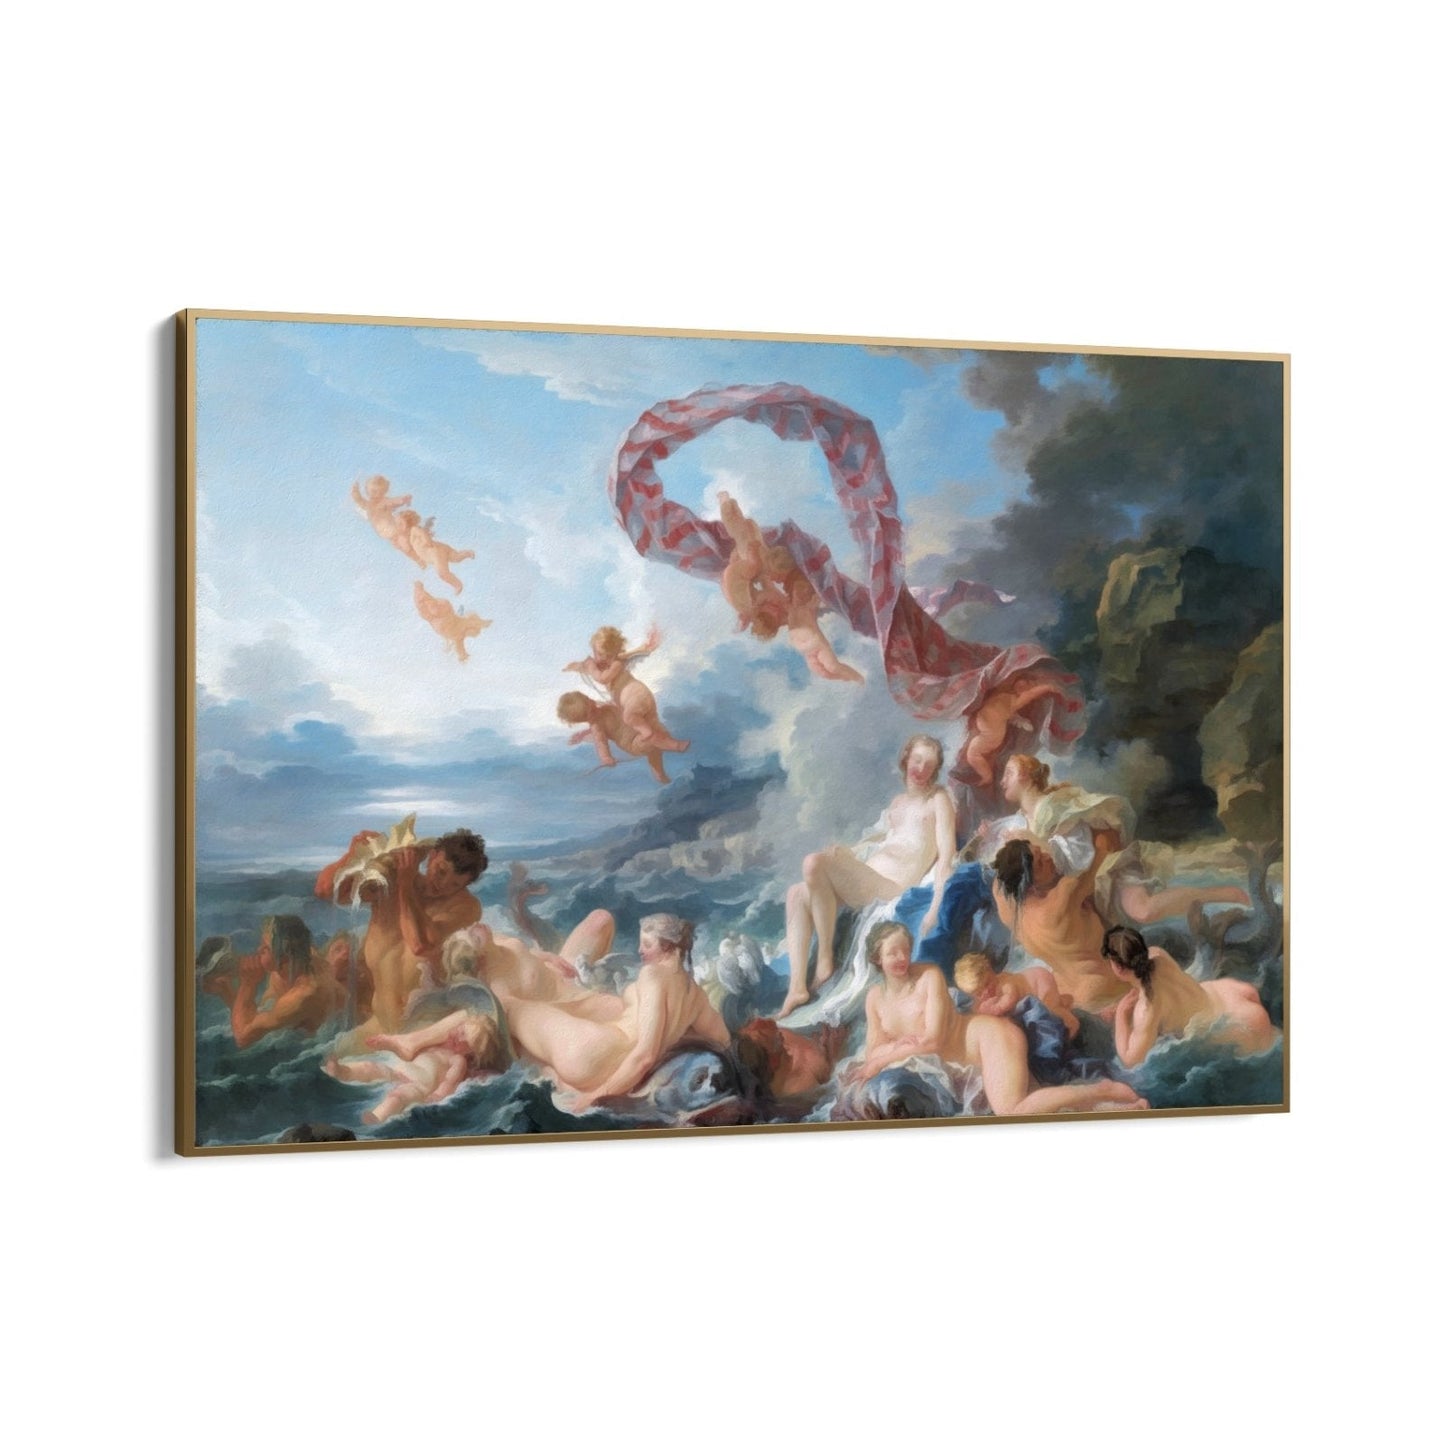 The Triumph of Venus, François Boucher (1740)